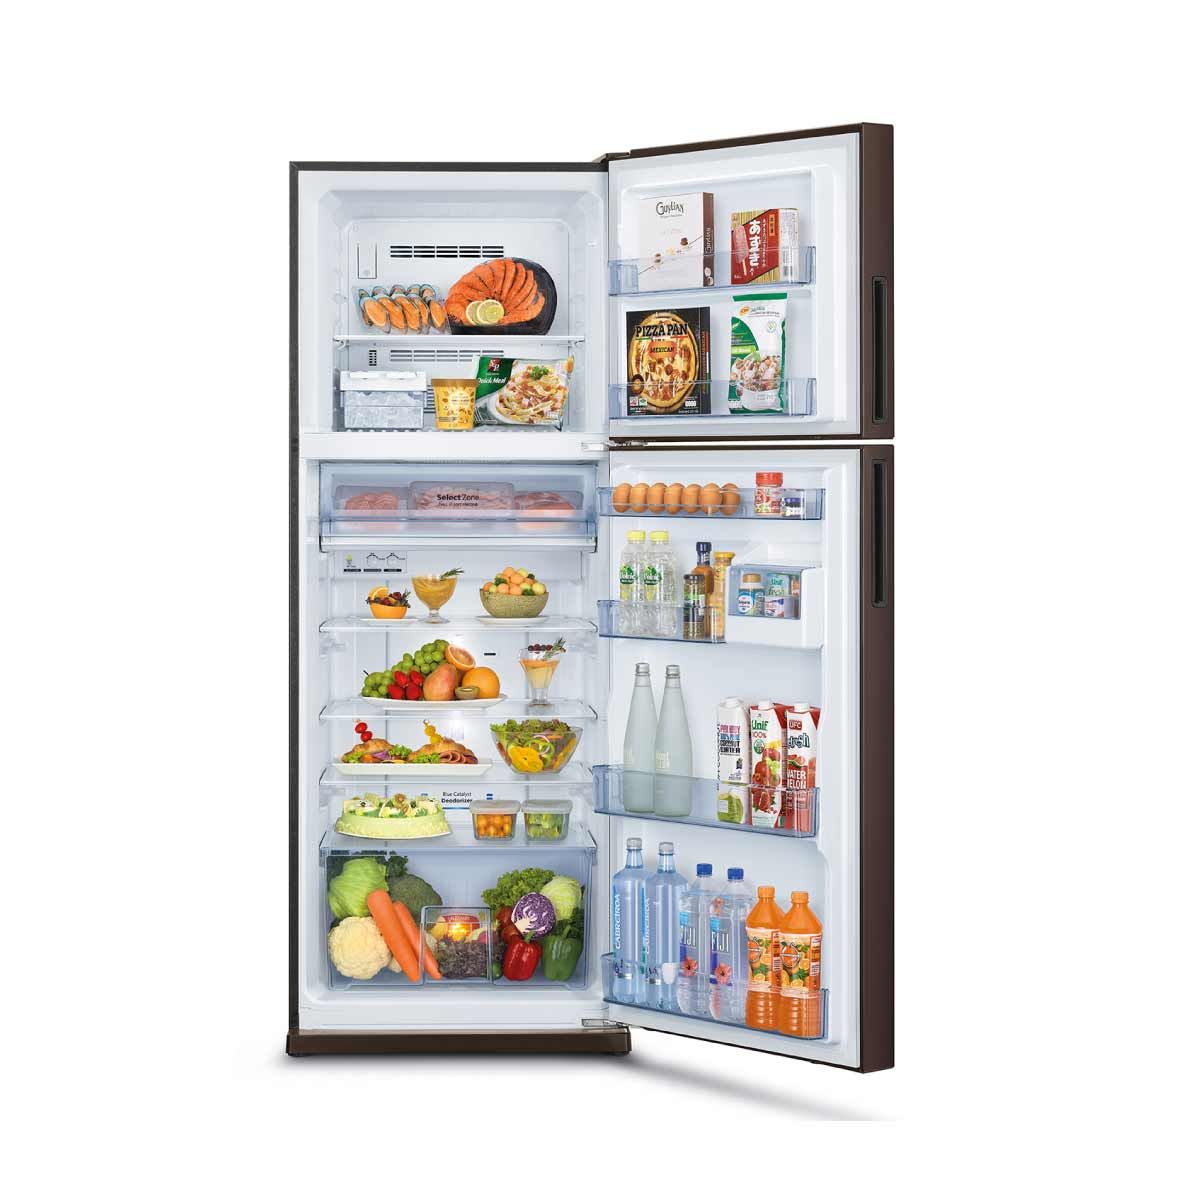 MITSUBISHI ELECTRIC ตู้เย็น 2 ประตู 14.6 คิว  INVERTER  สีน้ำตาลคอปเปอร์ รุ่น MR-FS45ES